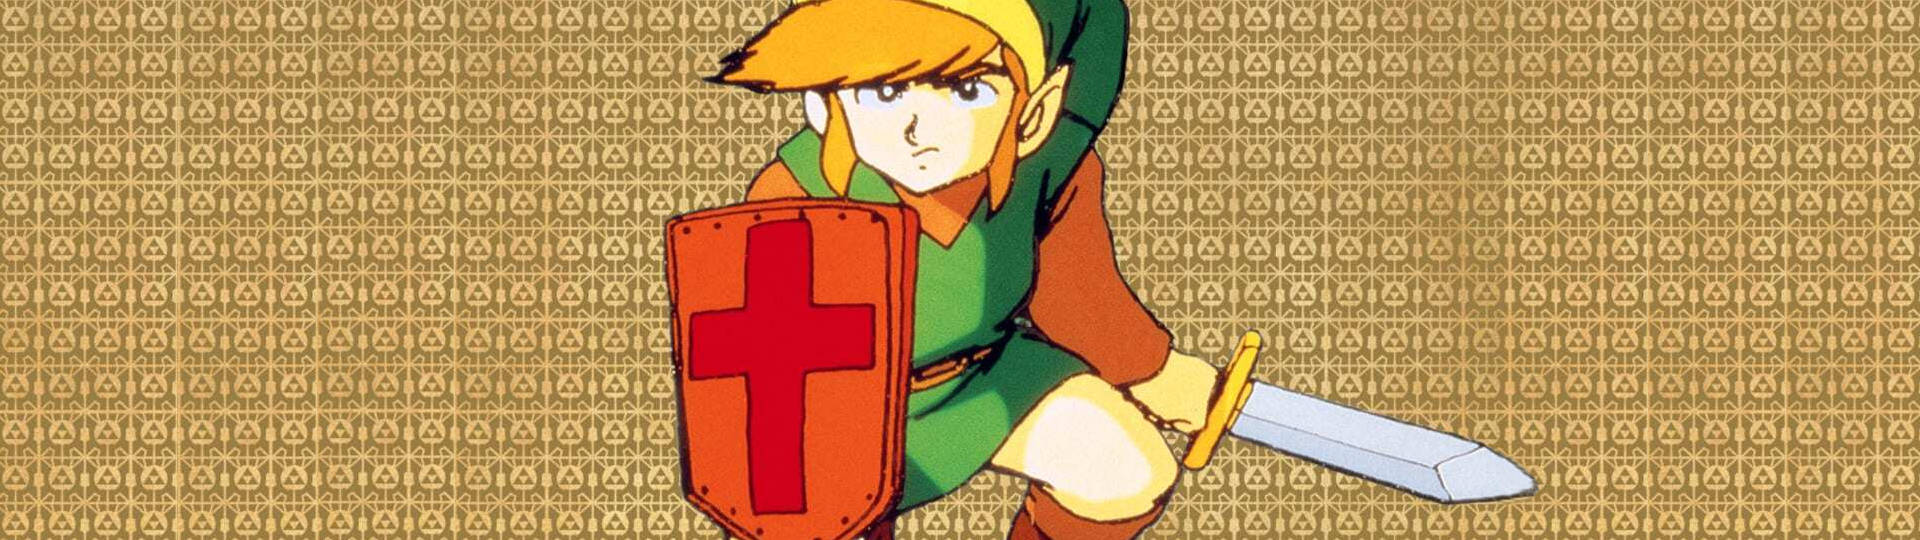 The Legend of Zelda game auction July 2021 slice